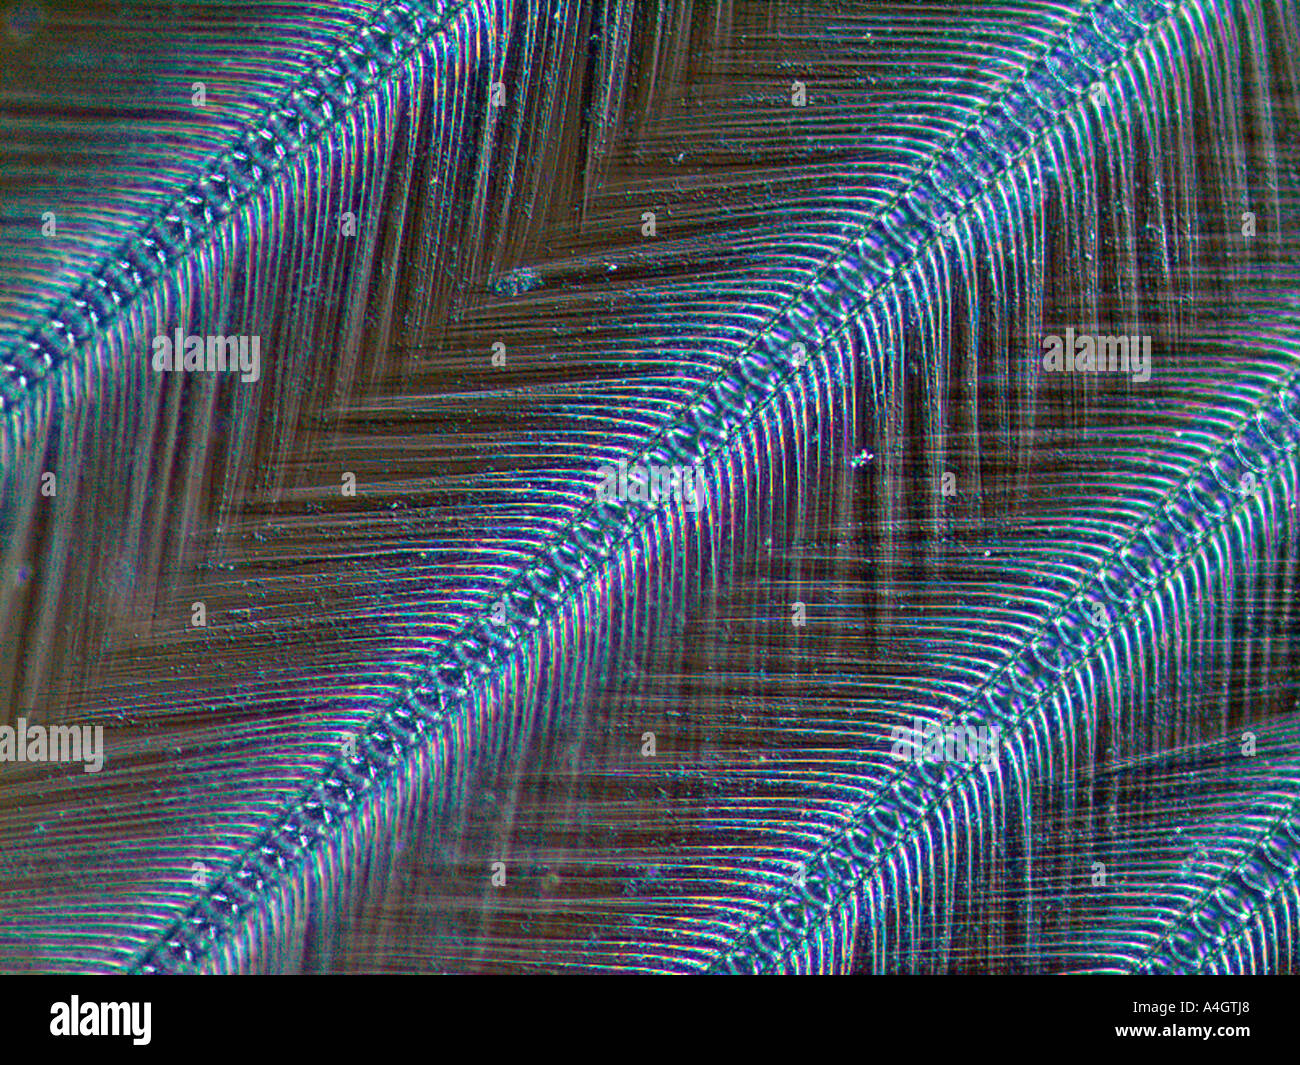 Soies microscopiques (poils) sur une crevette mantis, révélées à l'aide d'éclairage à contraste de phase Banque D'Images